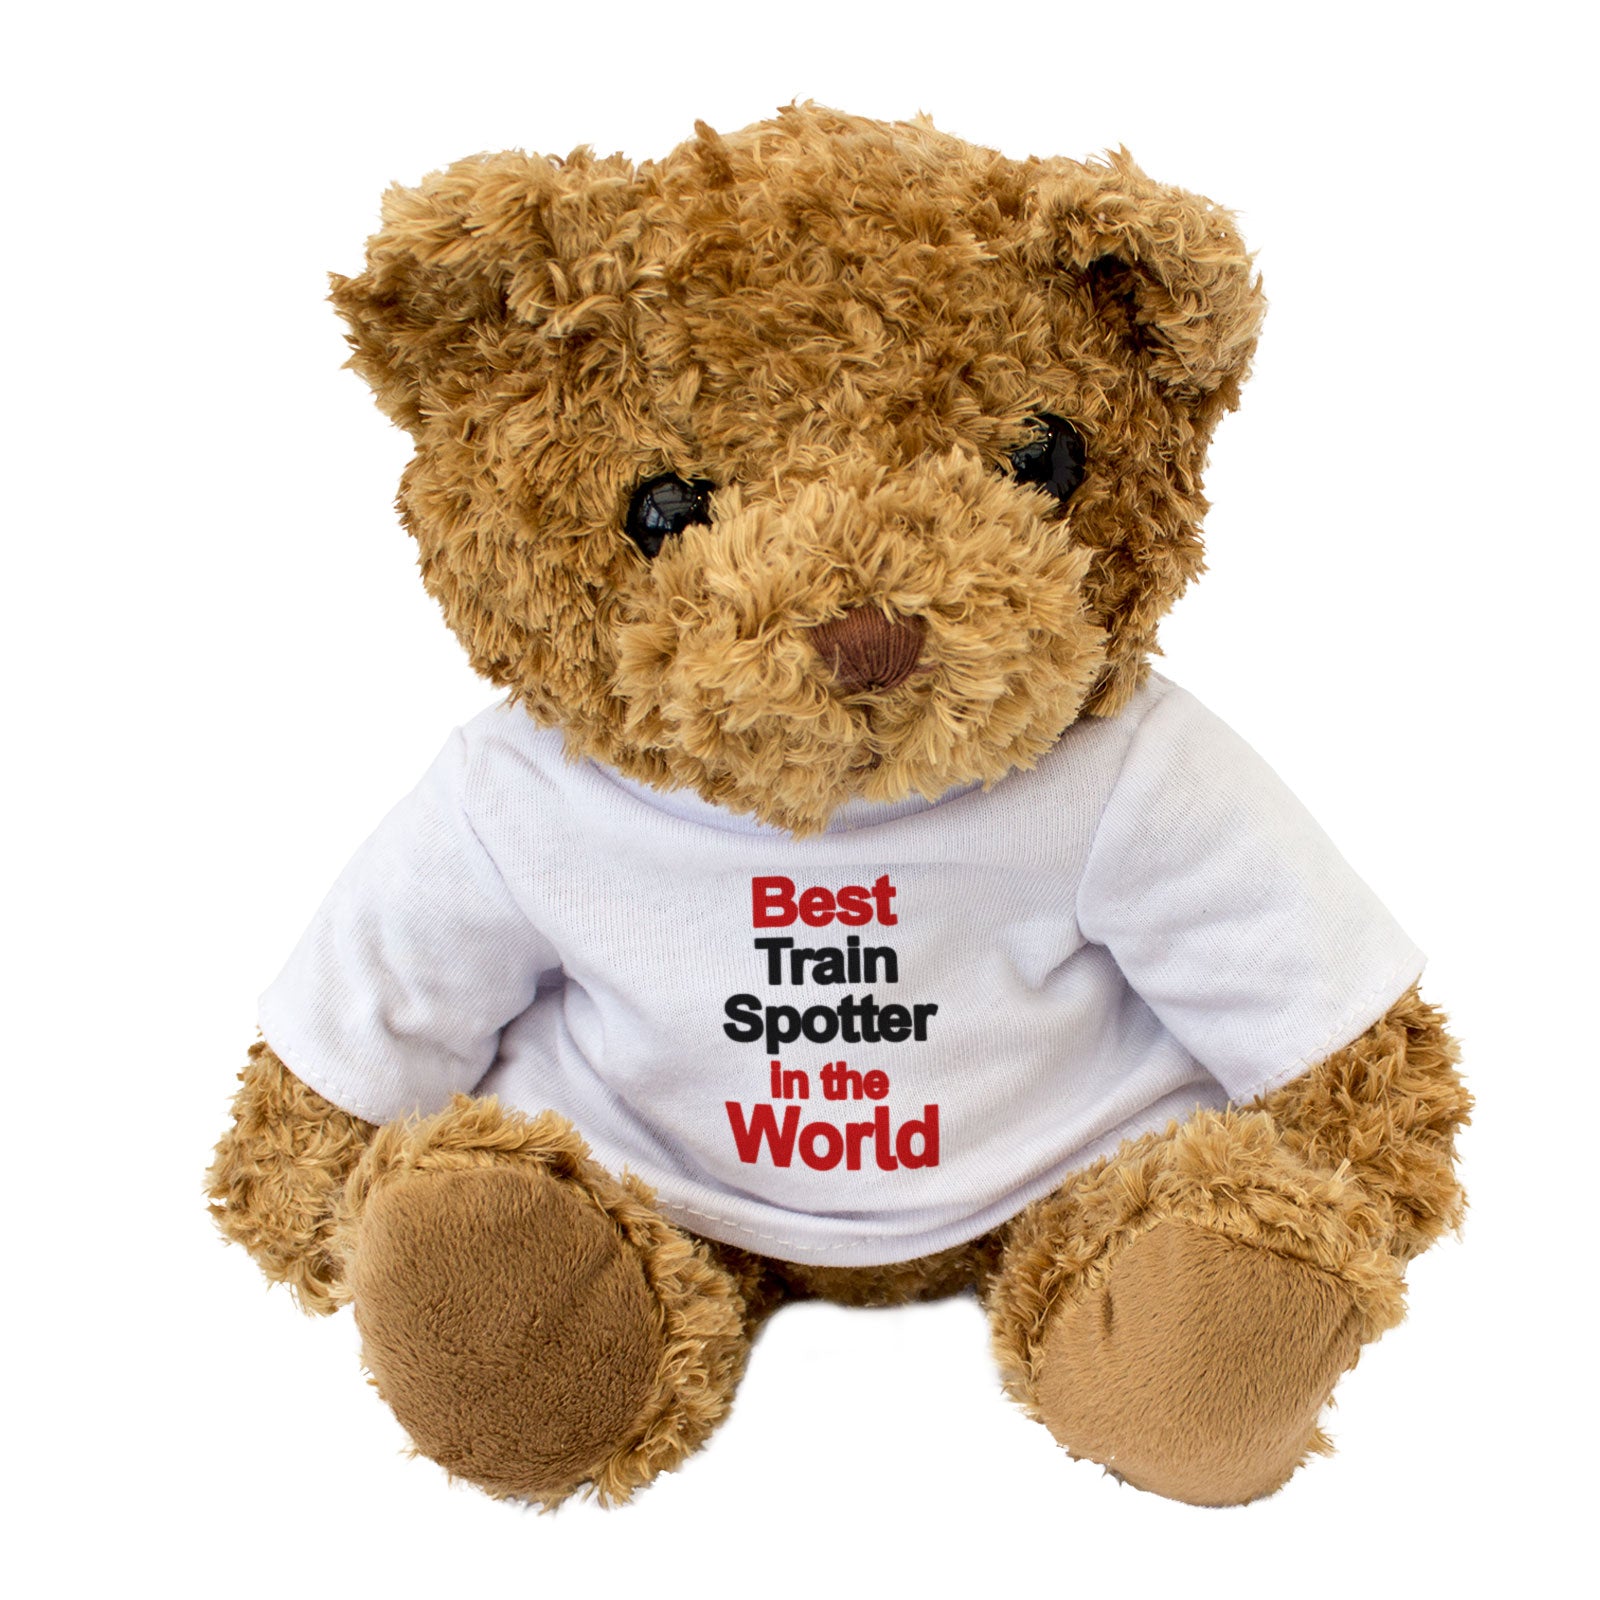 Best Train Spotter In The World Teddy Bear